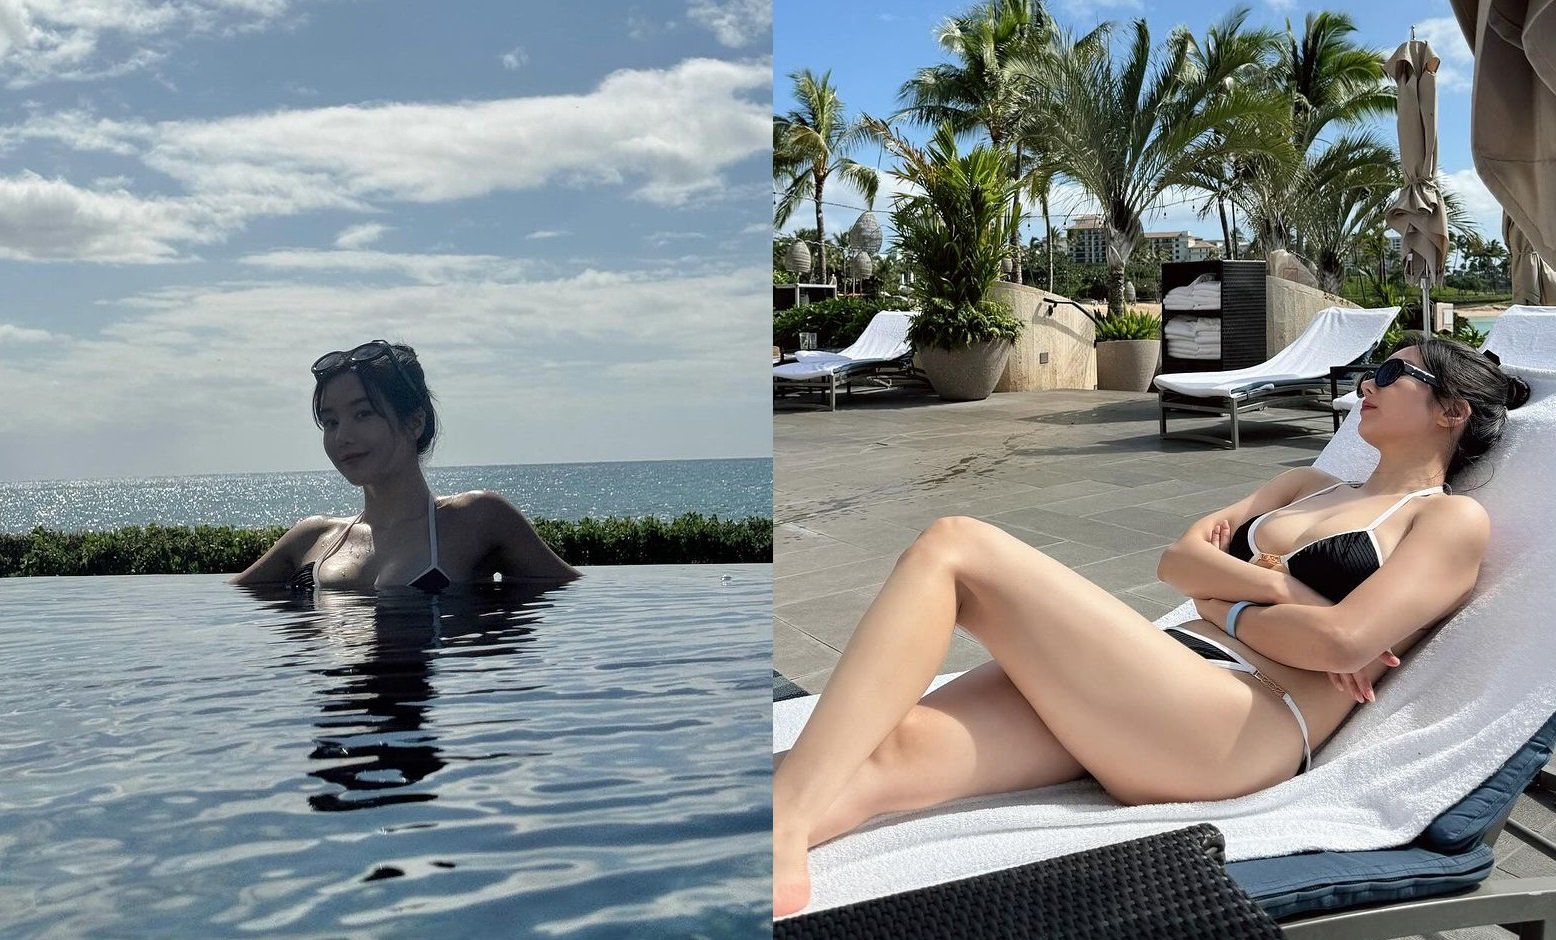 Kwon Eun Bi’s glamorous bikini shots from Hawaii leave fans awestruck